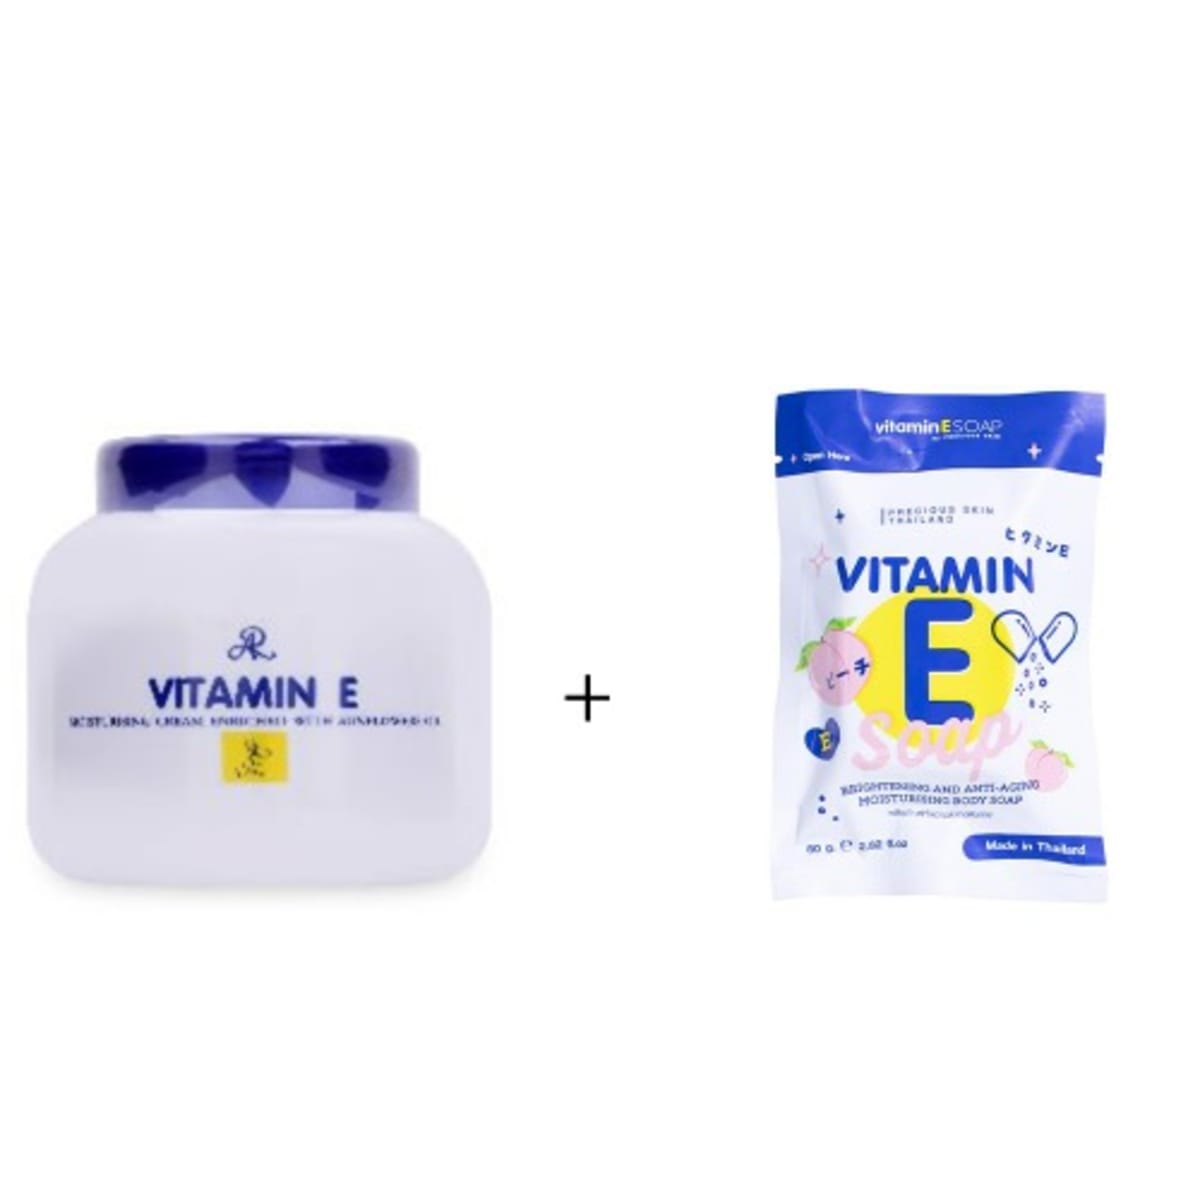 Vitamin E Face Cream – The Soapery